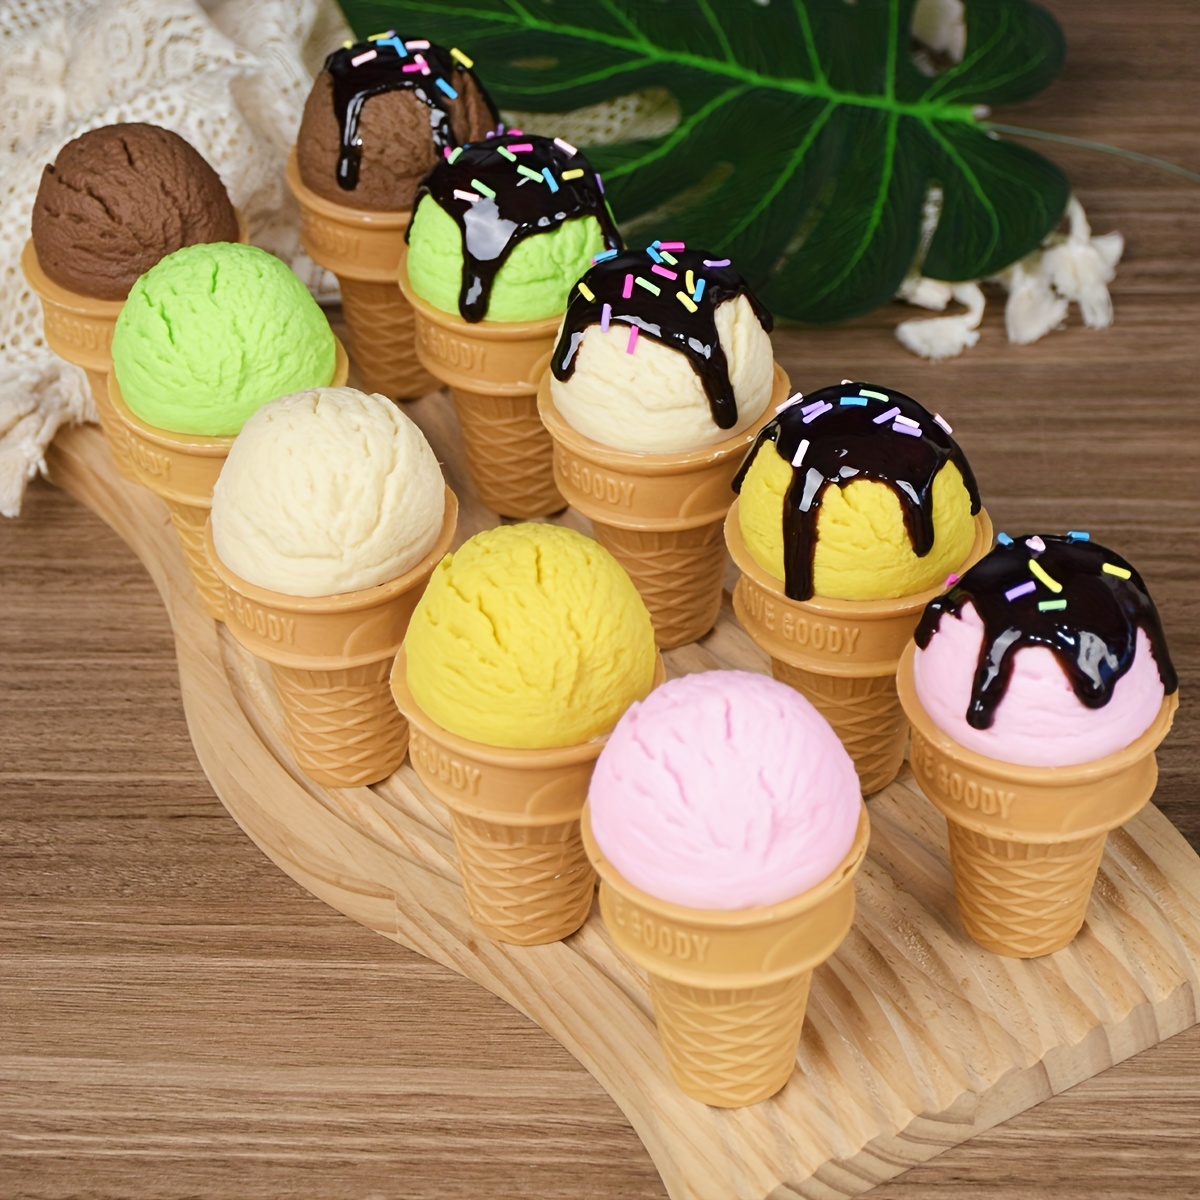 Ice Cream Set – Tiny Earth Toys